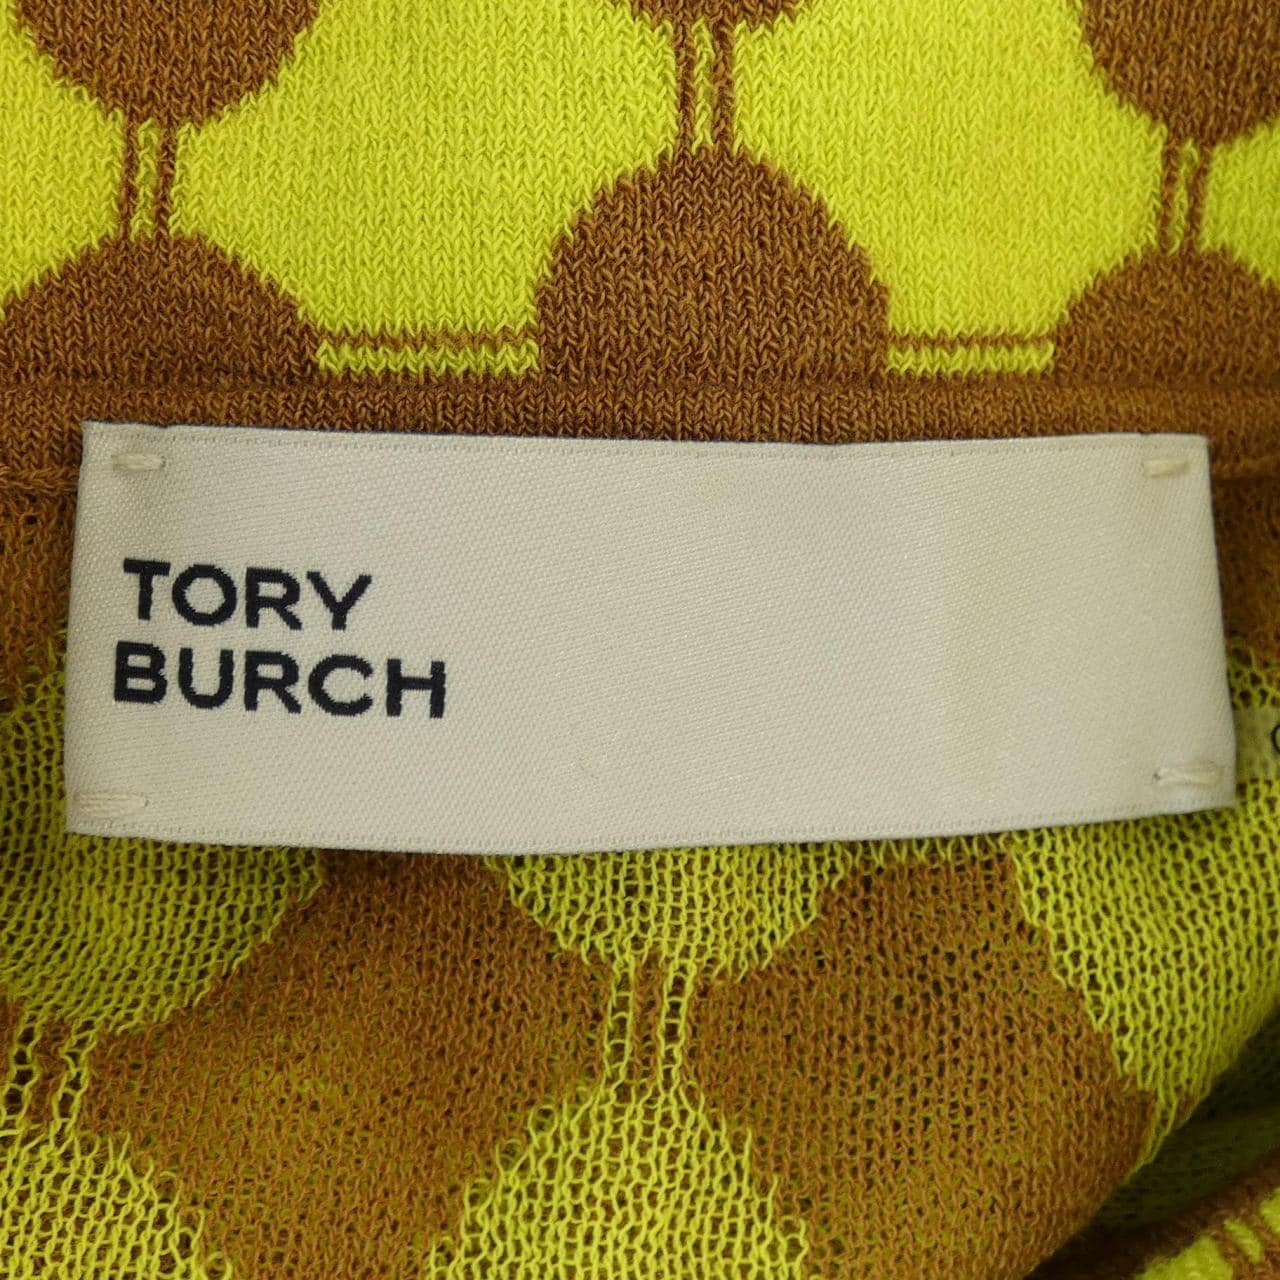 TORY BURCH BURCH polo shirt